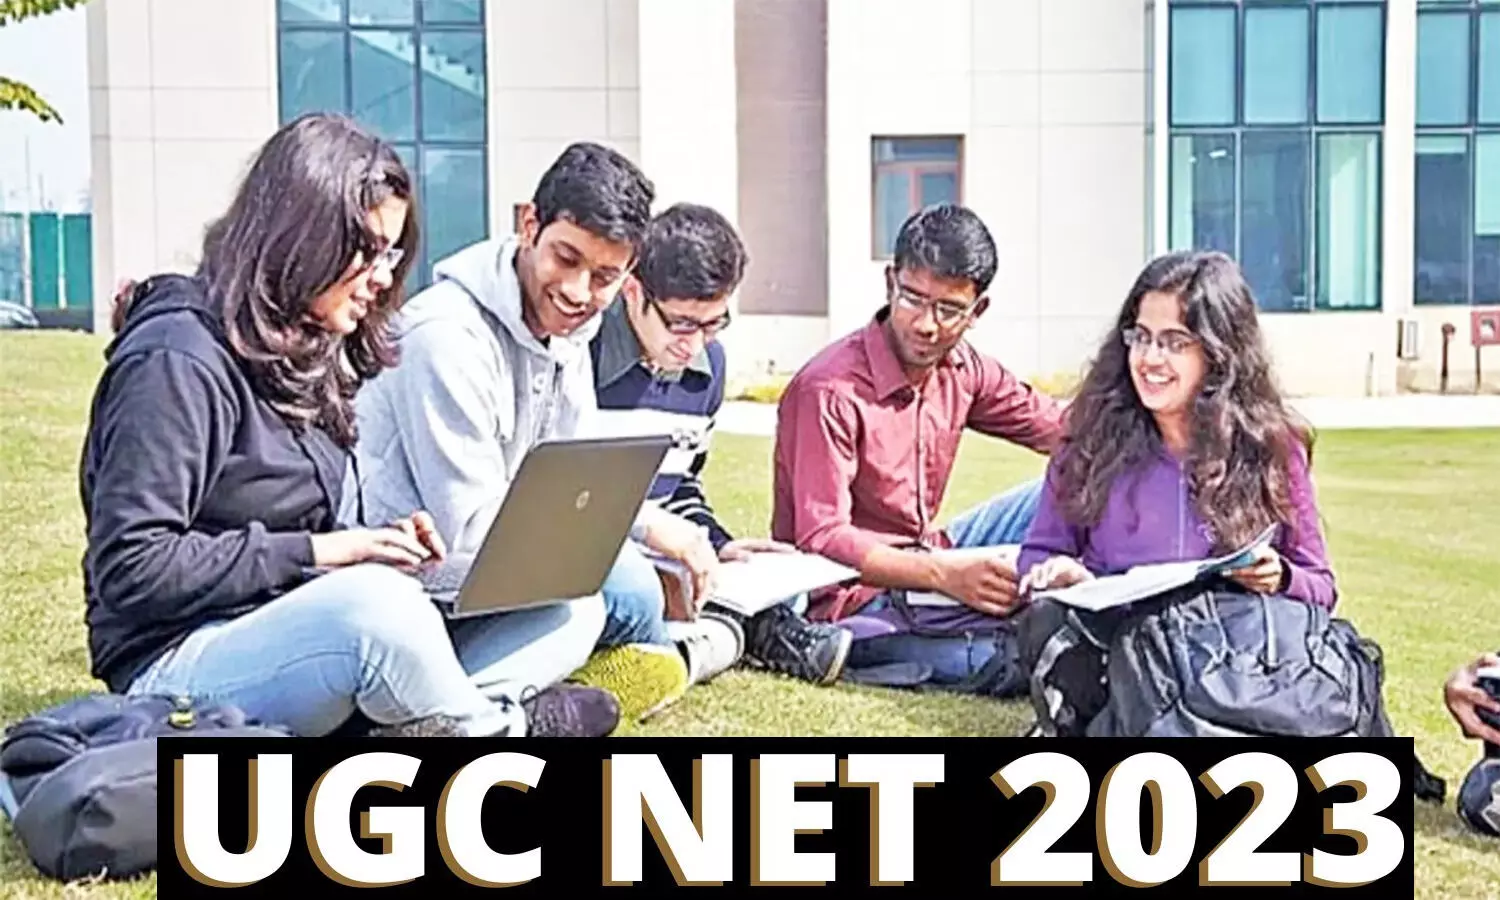 UGC NET Phase 3: यूजीसी नेट फेज 3 परीक्षा 2023 का एडमिट कार्ड जारी, डाउनलोड करने के लिए यह है लिंक ugcnet.nta.nic.in